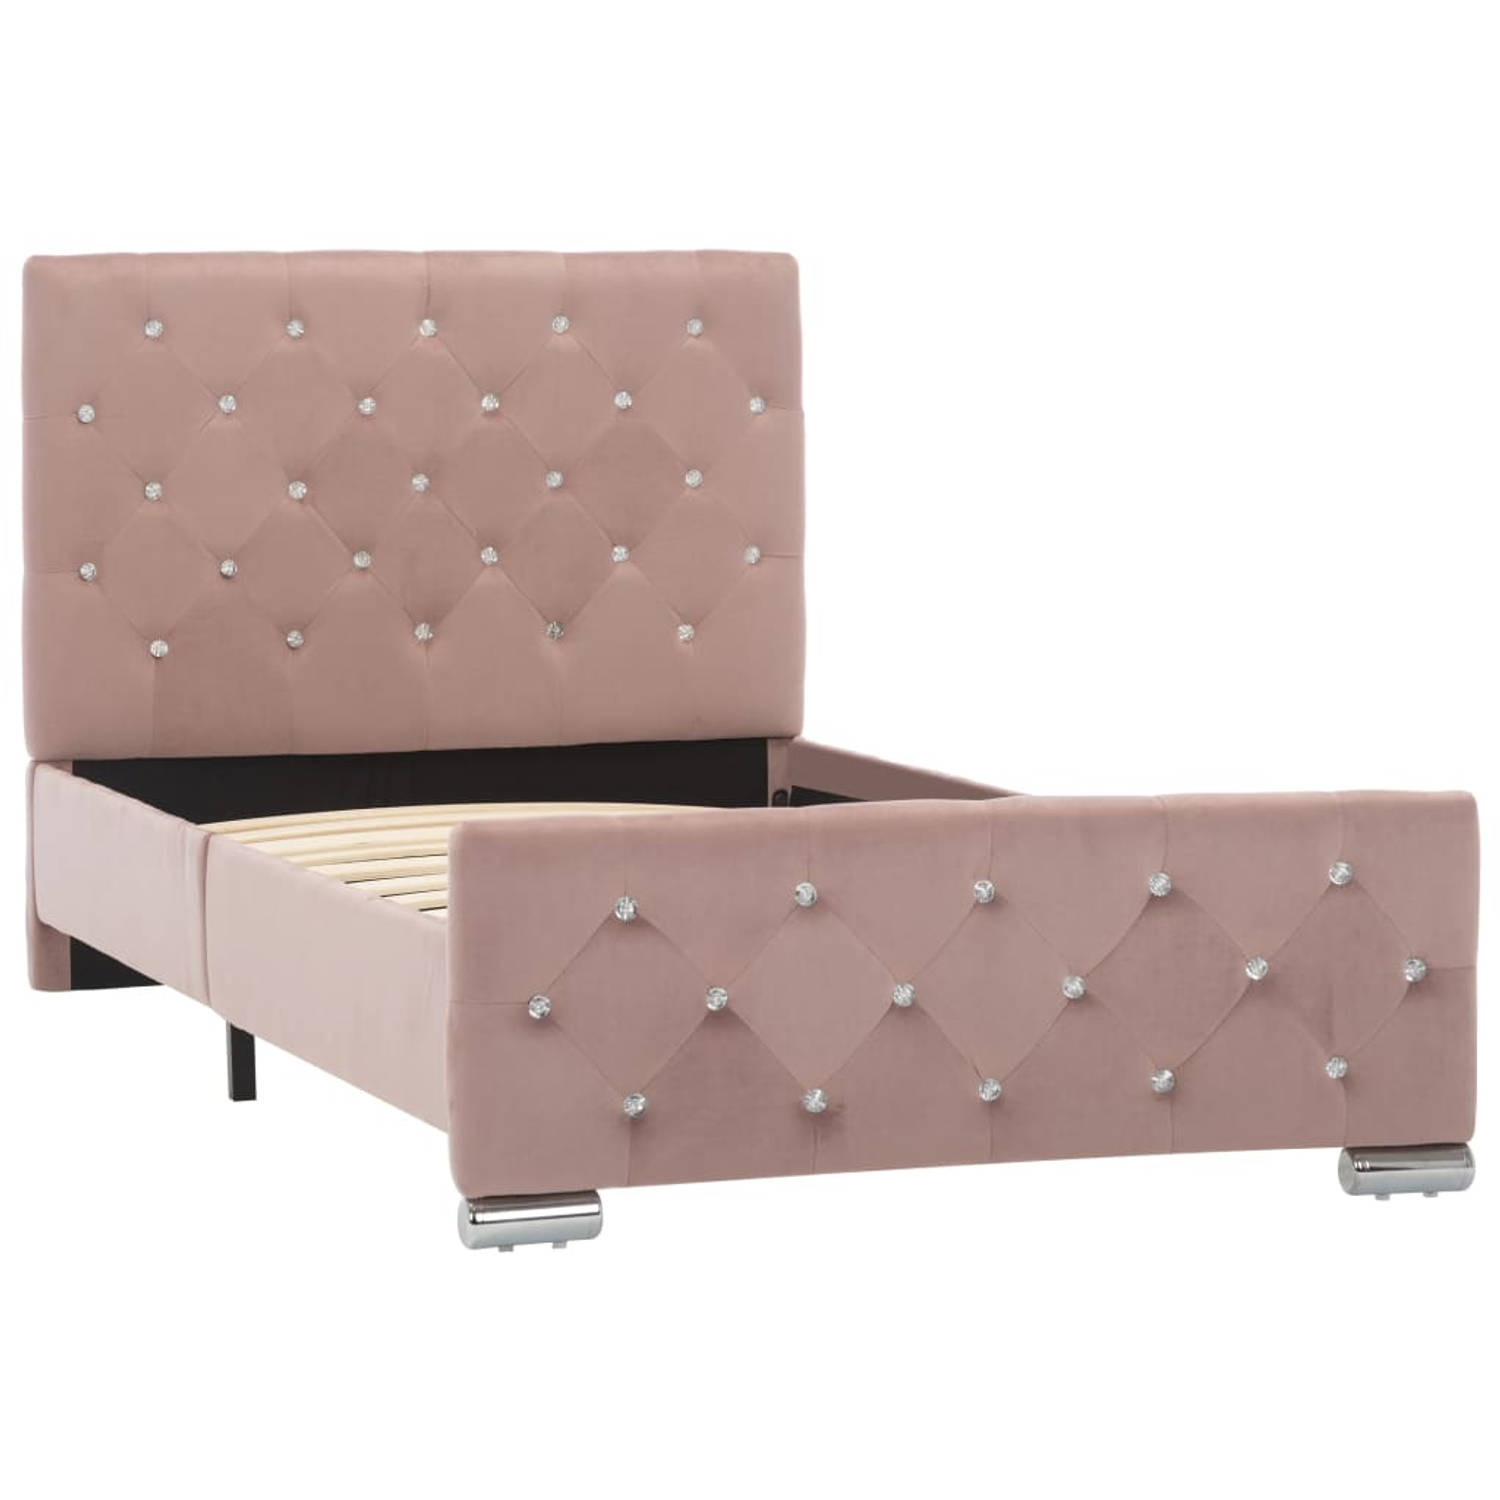 The Living Store Bedframe - Klassiek model van hout en staal - 90 x 200 cm - Inclusief duurzaam fluwelen bekleding - Kleur- roze